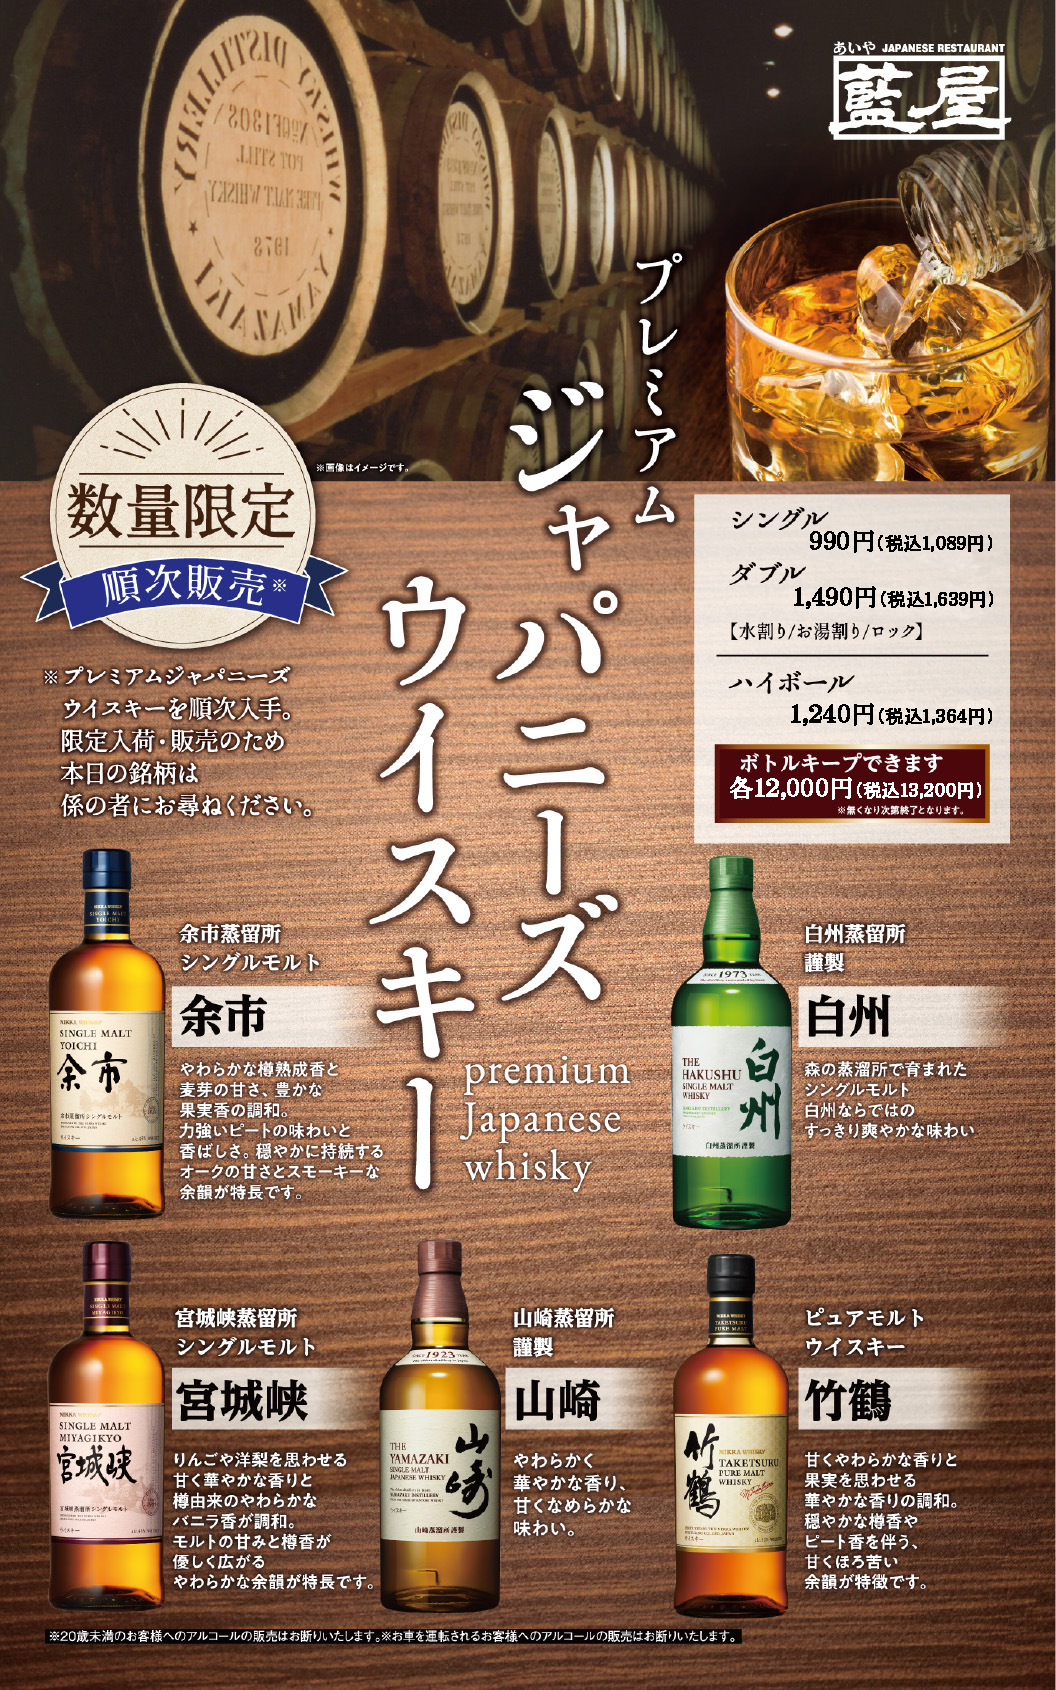 Japanese whiskey